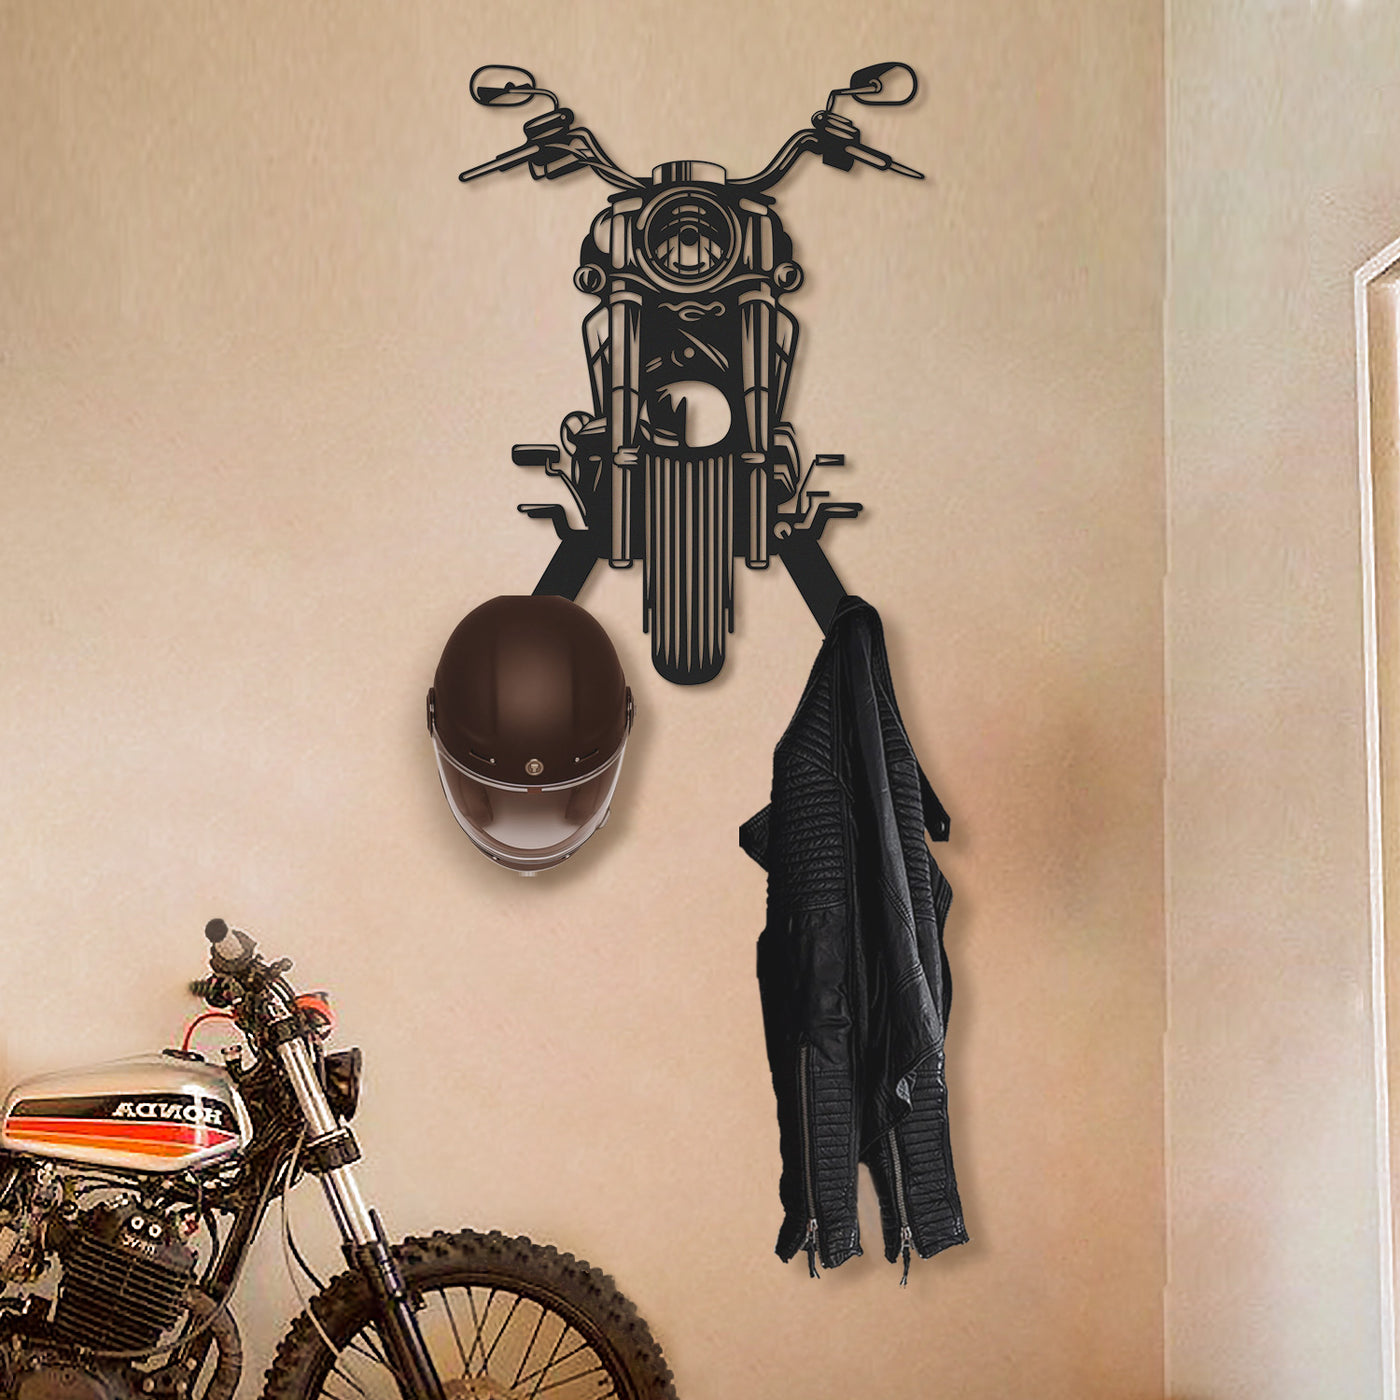 Personalized Metal Motorcycle Helmet Wall Hanger - APT631